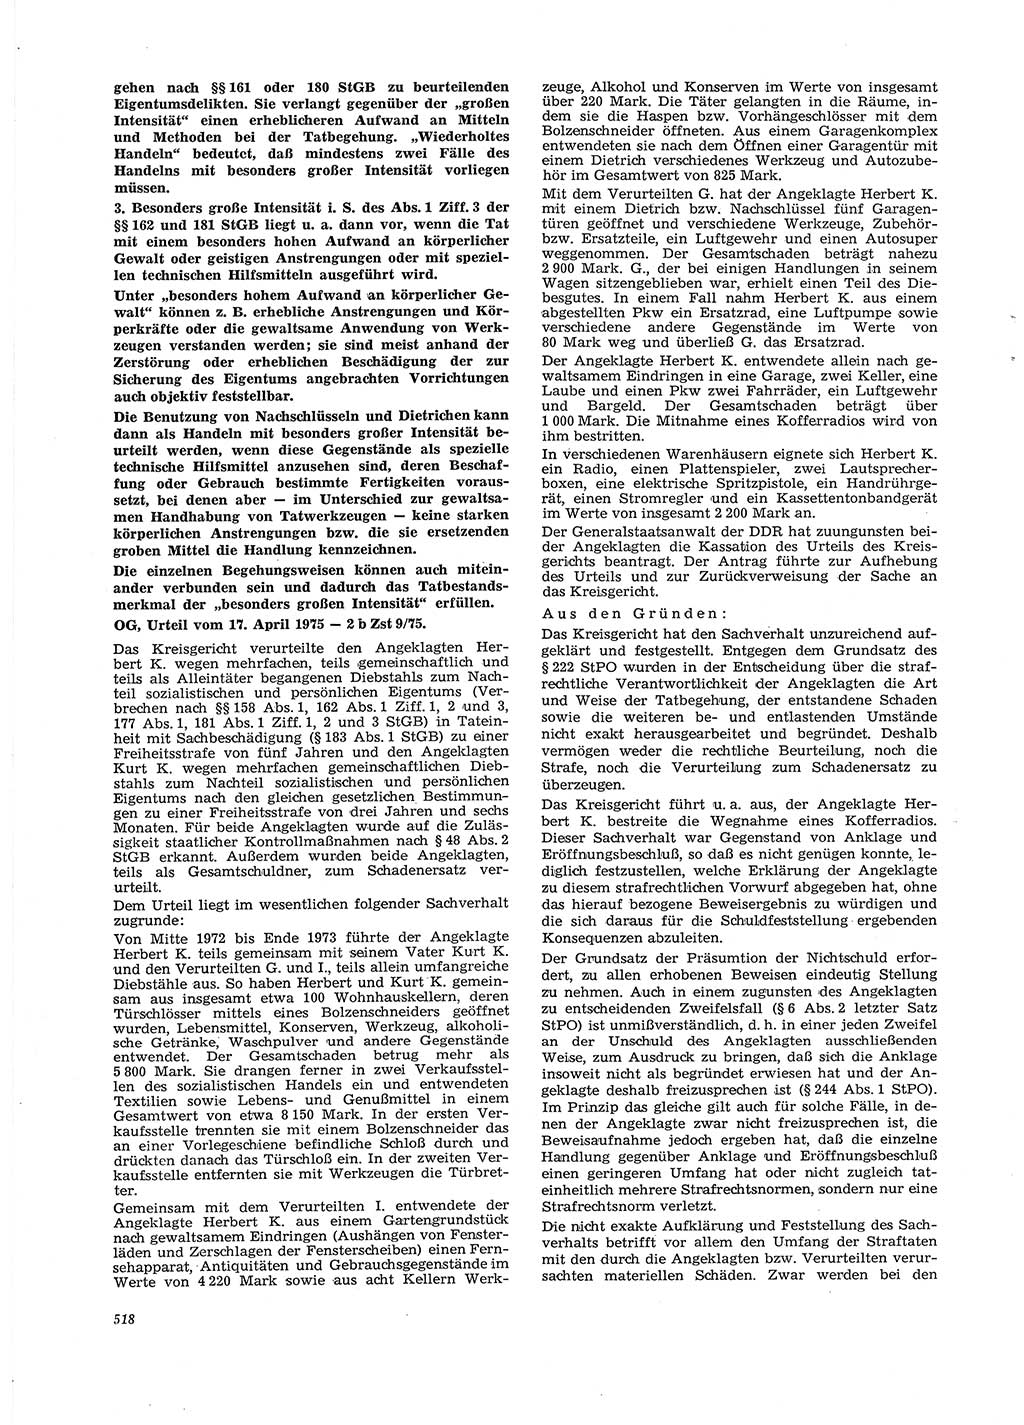 Neue Justiz (NJ), Zeitschrift für Recht und Rechtswissenschaft [Deutsche Demokratische Republik (DDR)], 29. Jahrgang 1975, Seite 518 (NJ DDR 1975, S. 518)